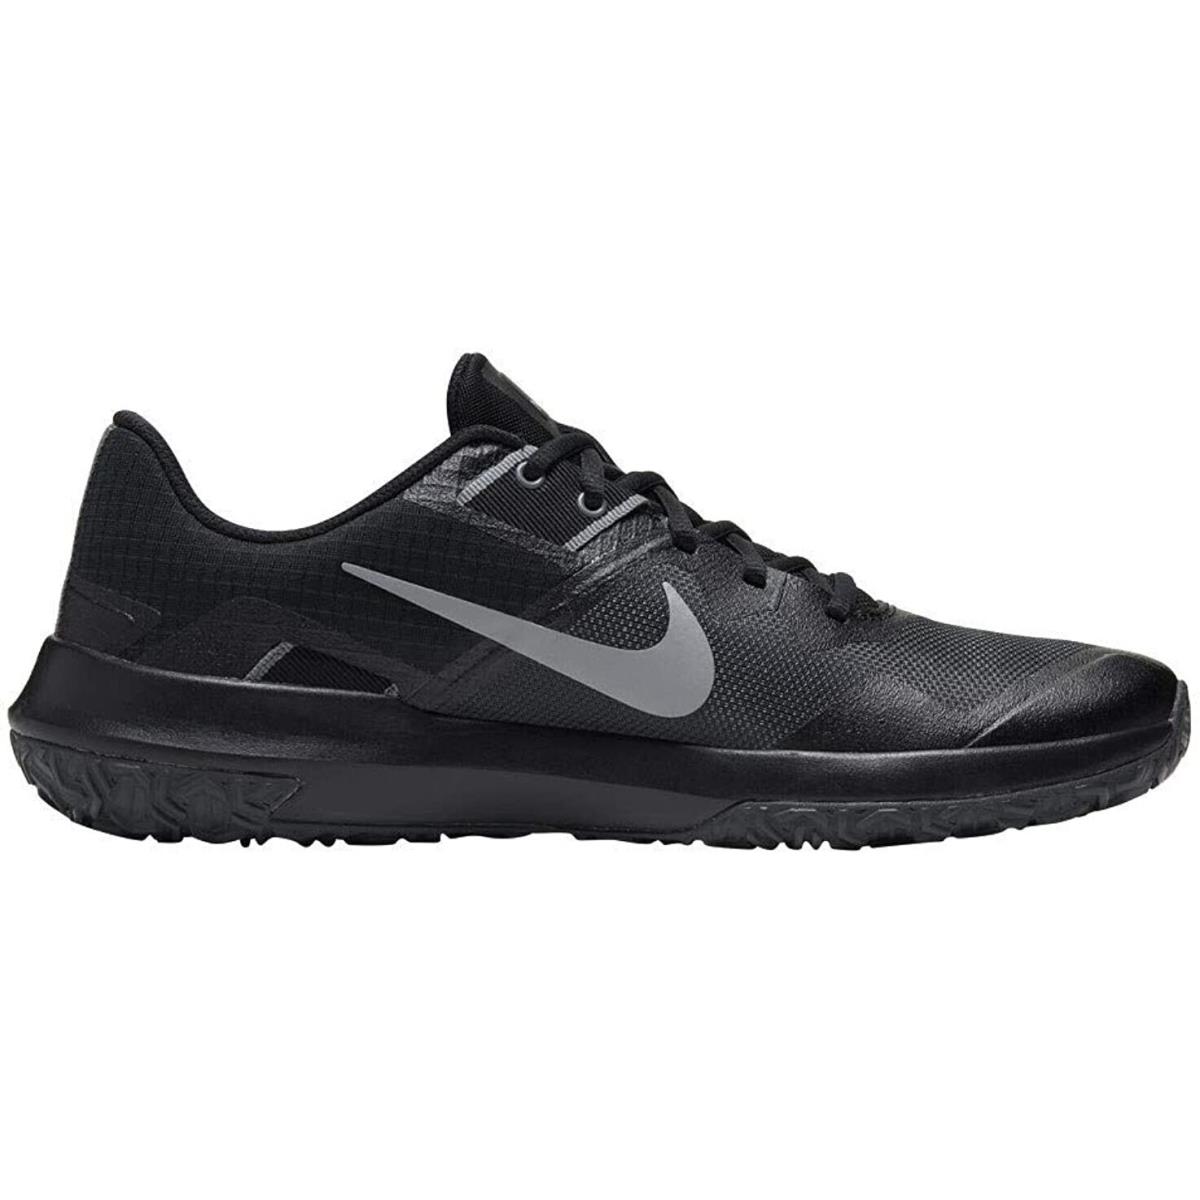 Nike Varsity Compete Tr 3 Mens Training Shoe Cj0813-002 Size 12 - Black